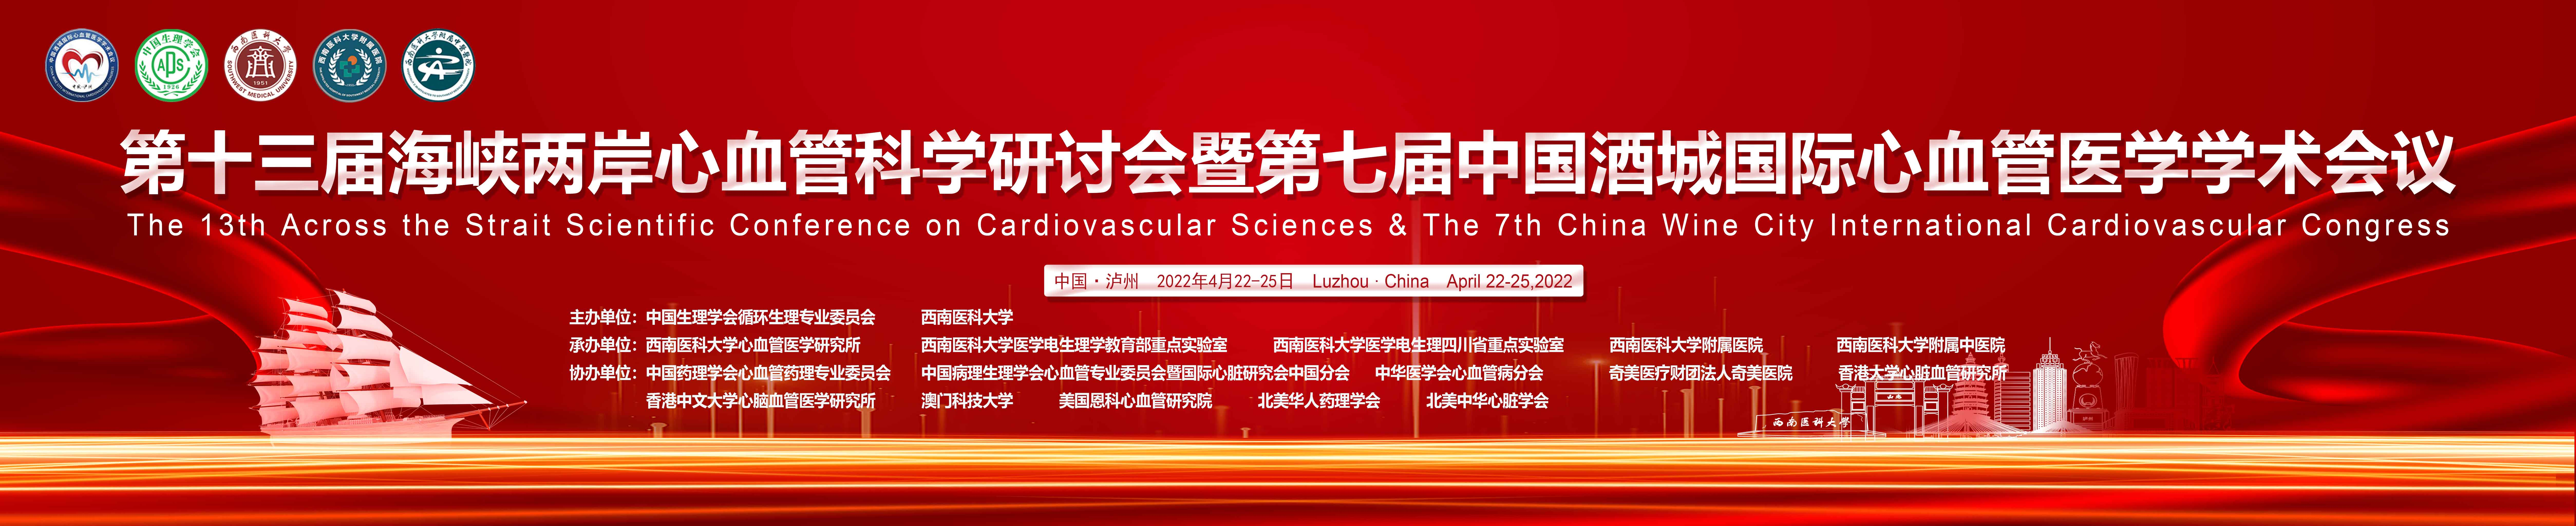 第十三届海峡两岸心血管科学研讨会学术会议暨第七届中国酒城国际心血管学术会议